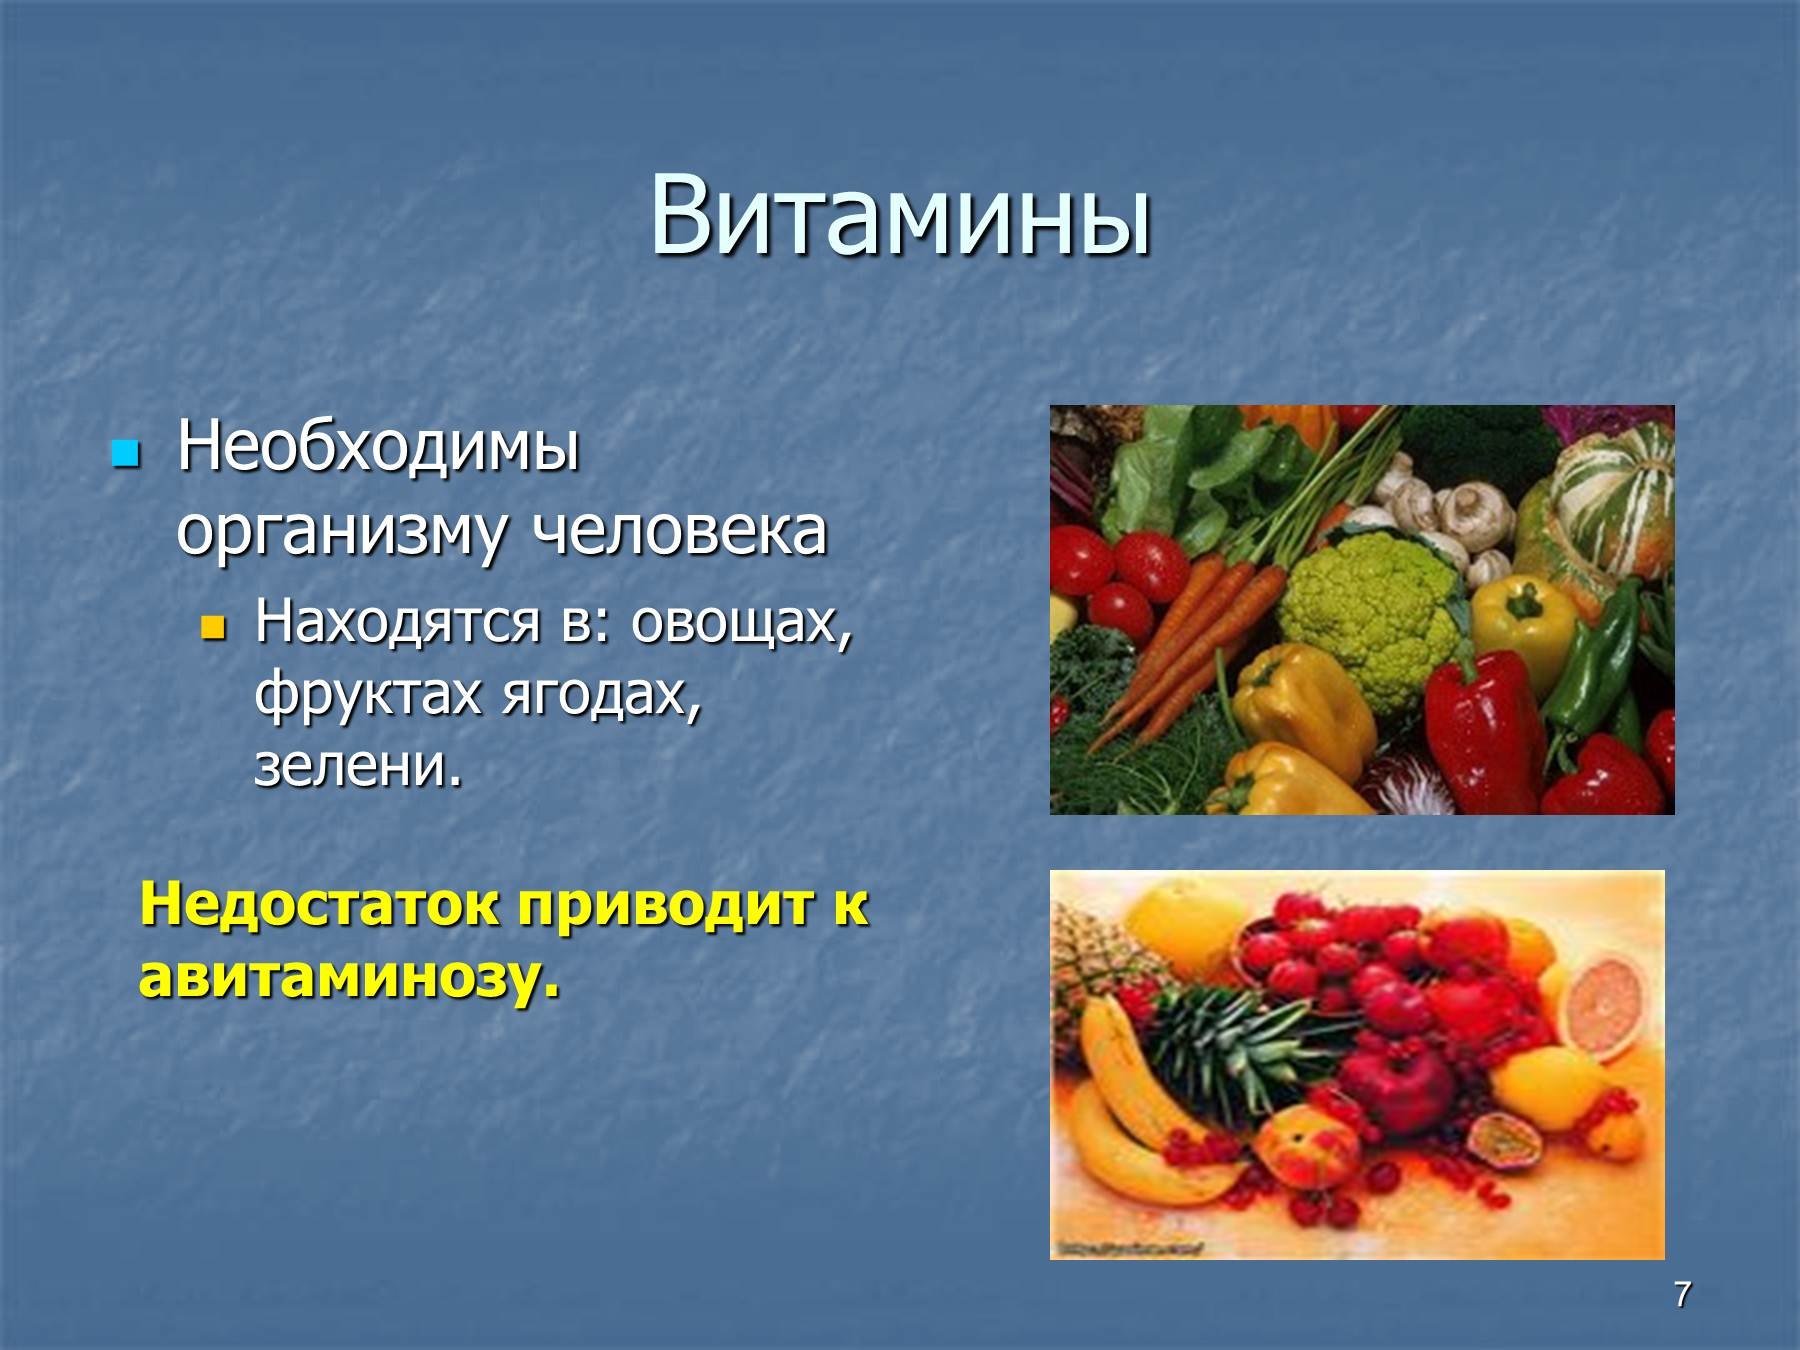 Витамины находящиеся в овощах. Овощи и органы человека фрукты. Овощи и фрукты полезные продукты. Авитаминоз и овощи и фрукты. Какие фрукты и овощи похожи на человеческие органы.